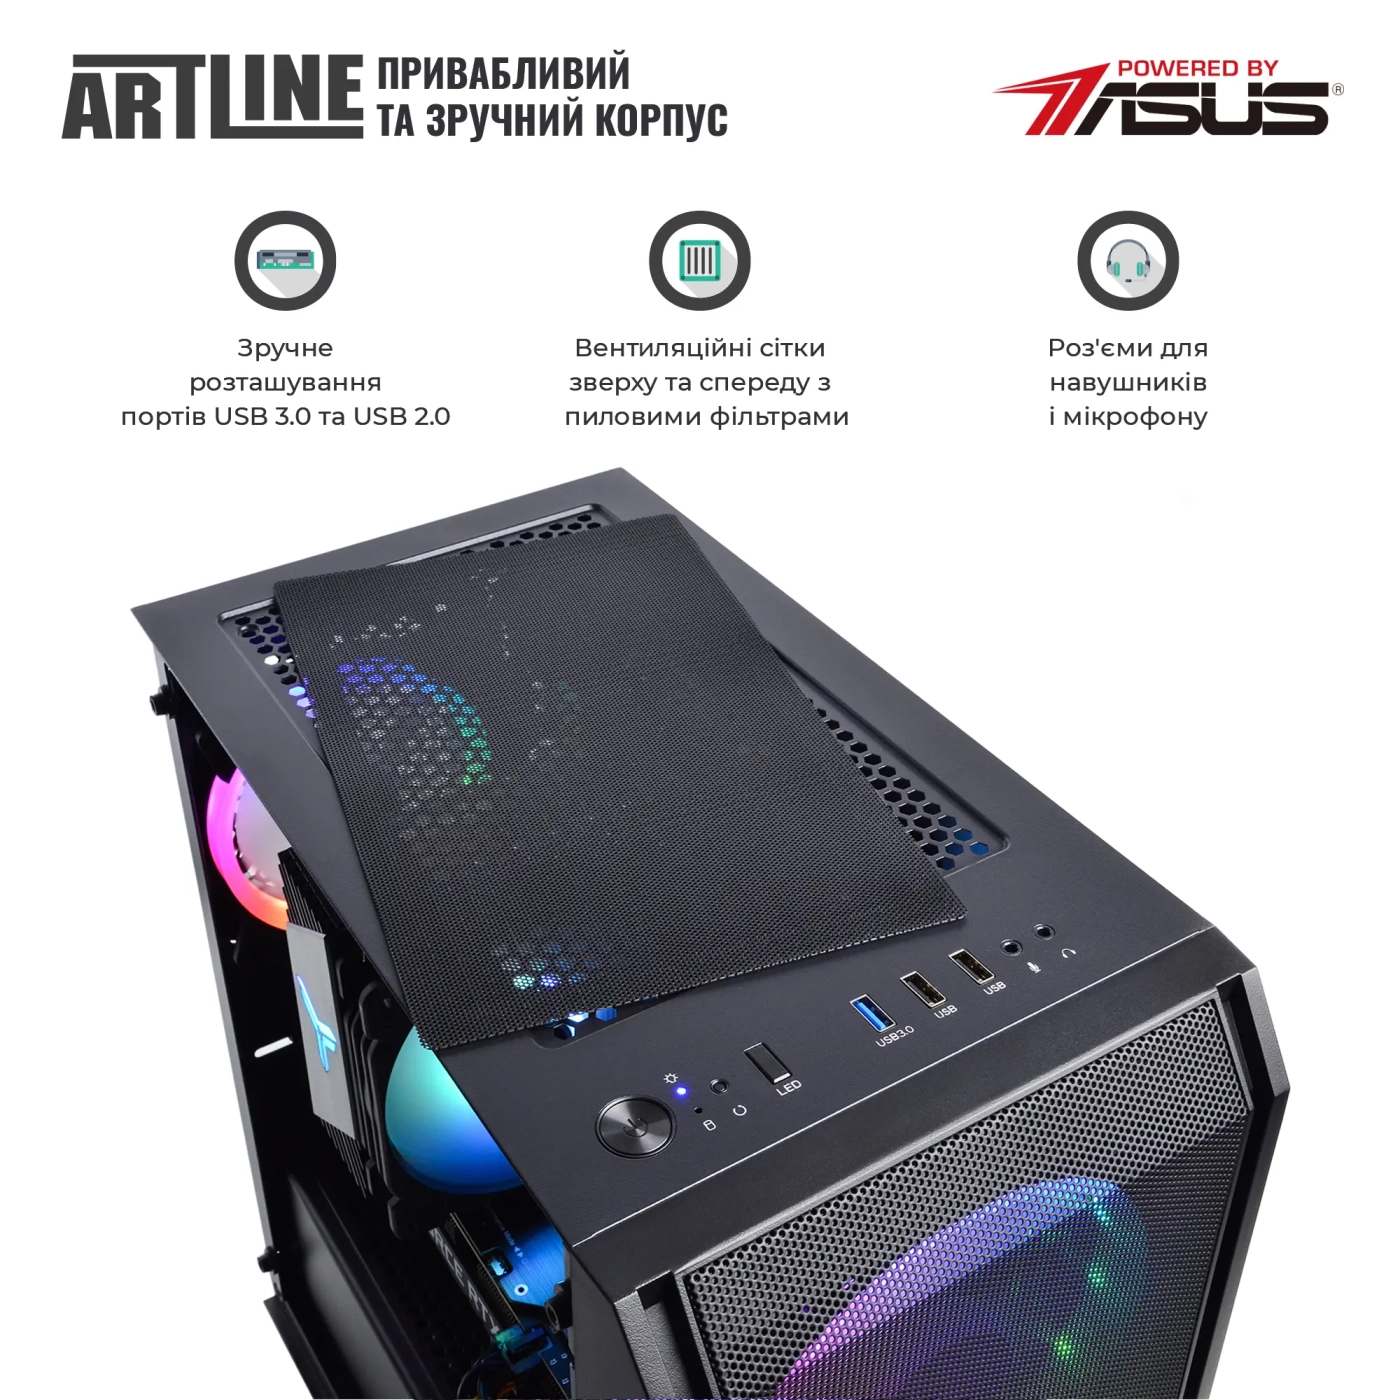 Купить Компьютер ARTLINE Gaming X75v70 - фото 6